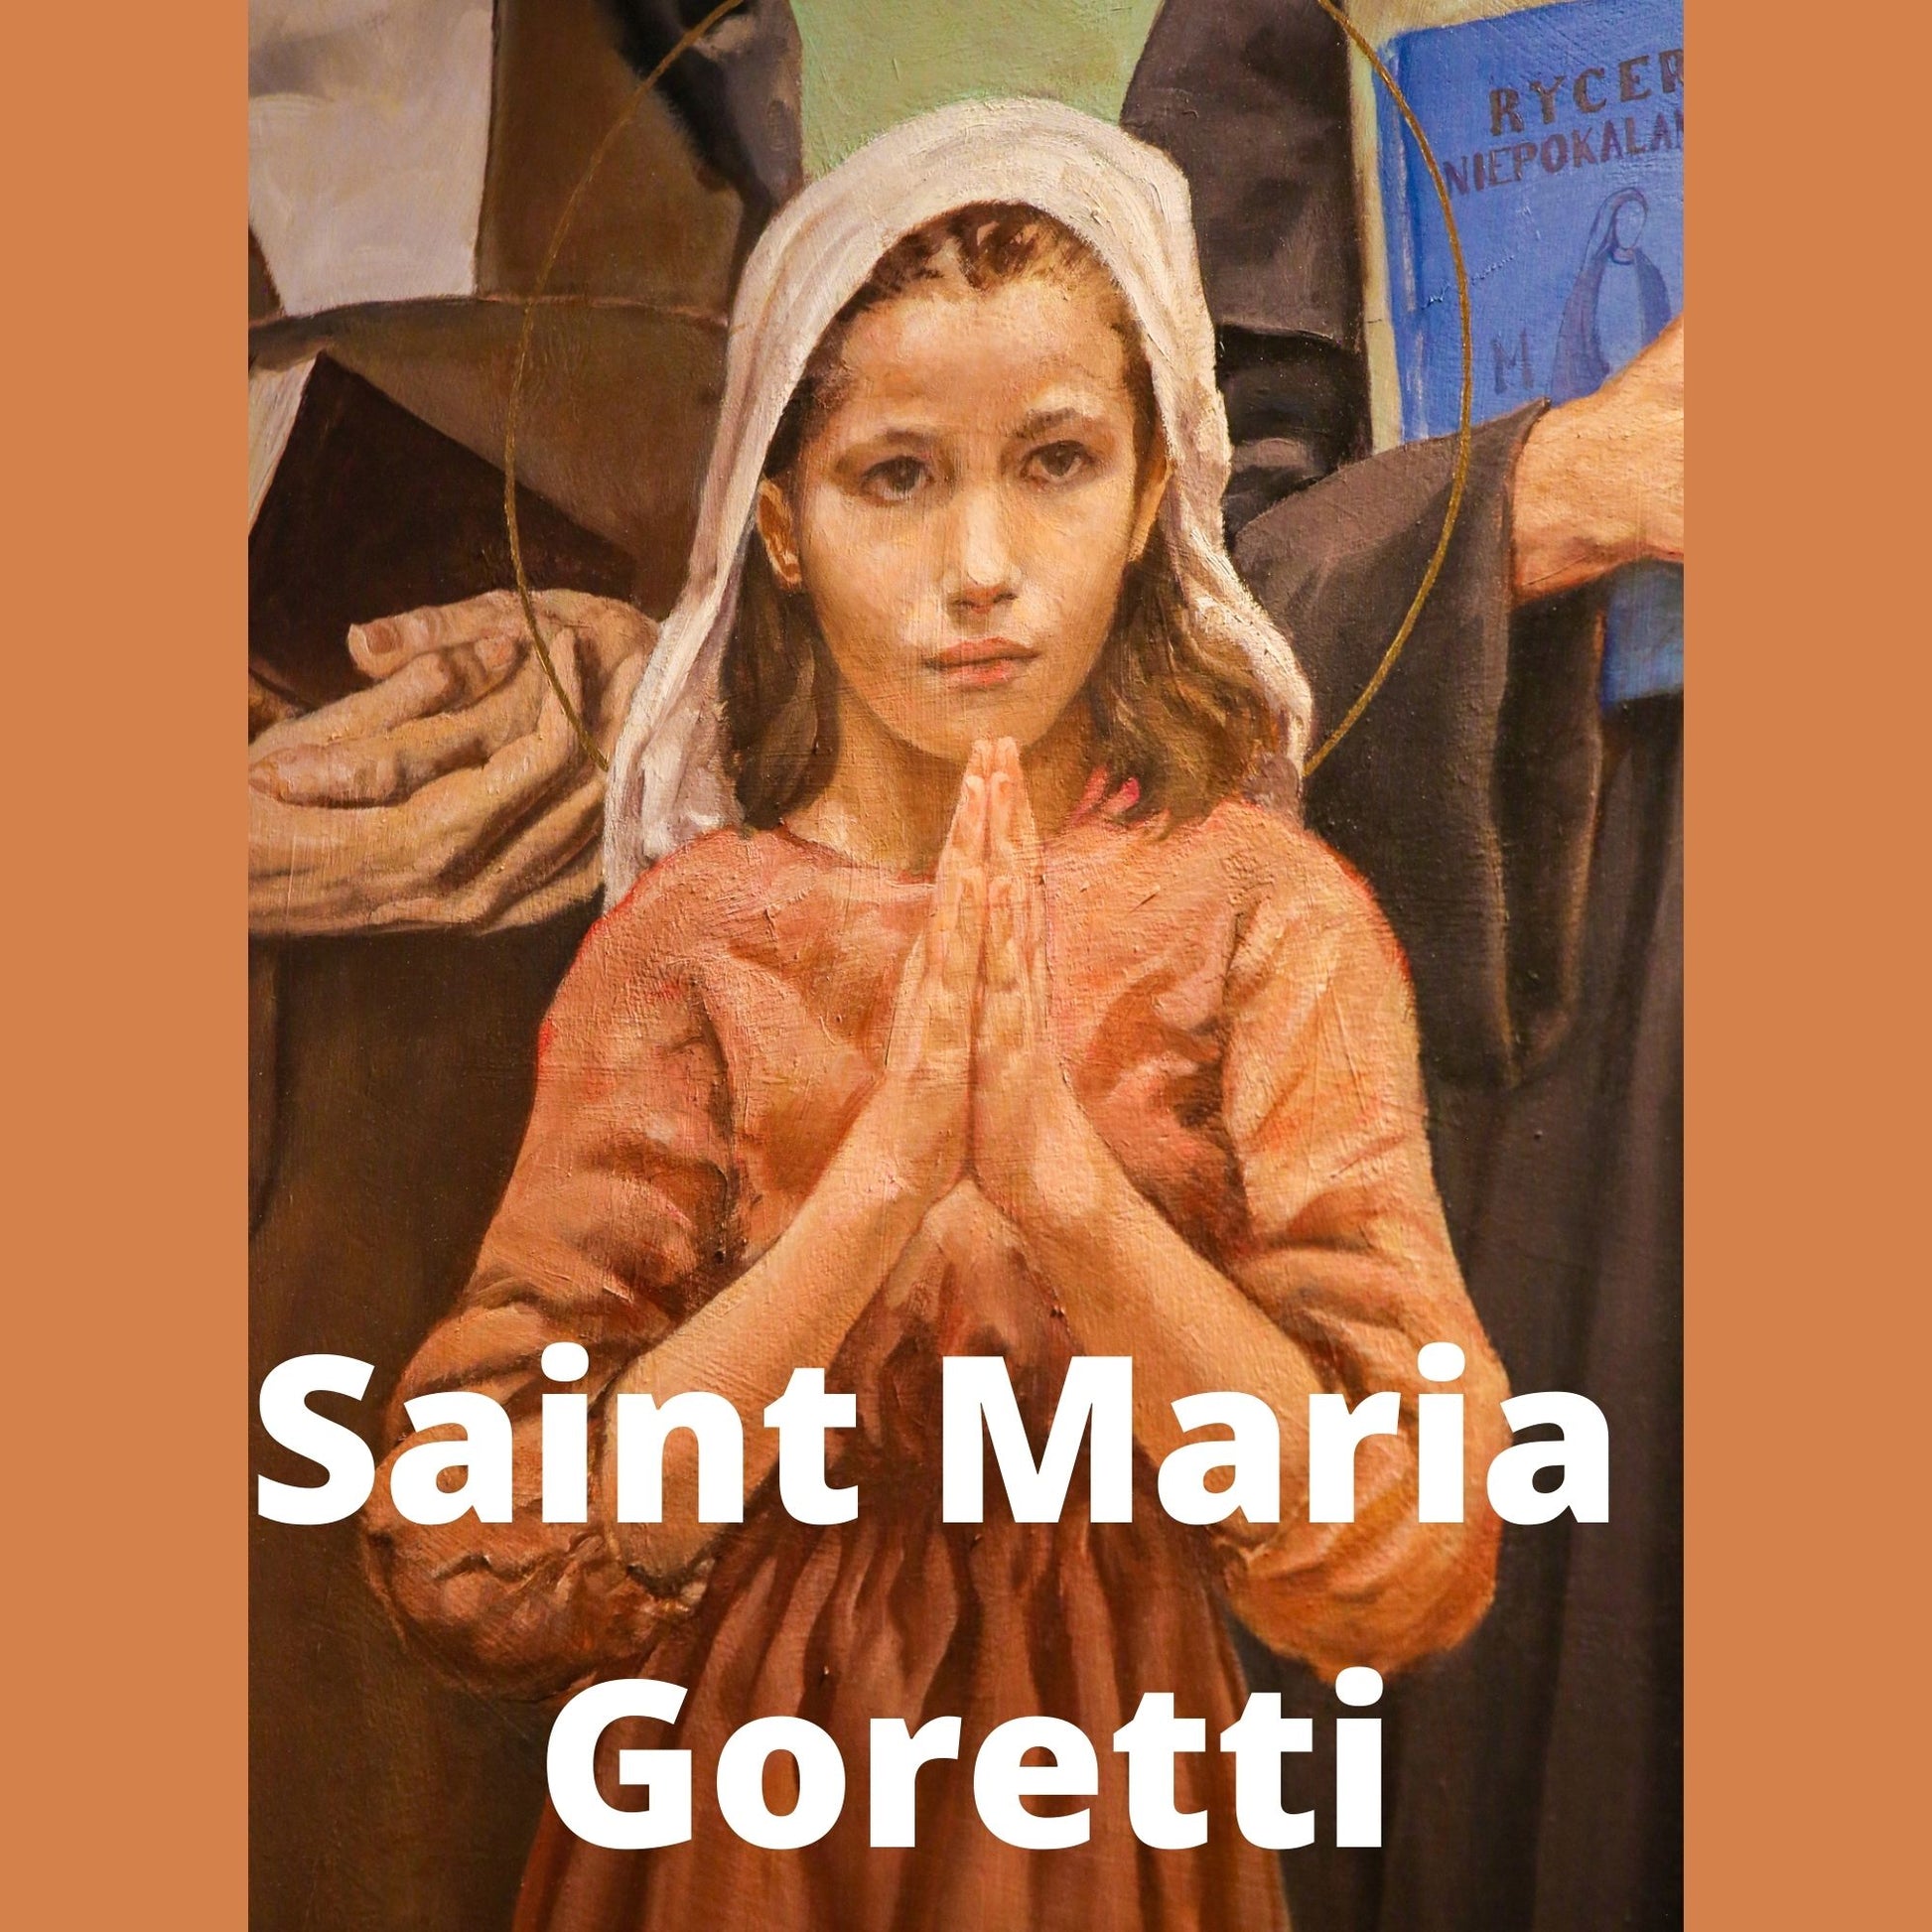 Saint Maria Goretti Video Download MP4 - Bob and Penny Lord